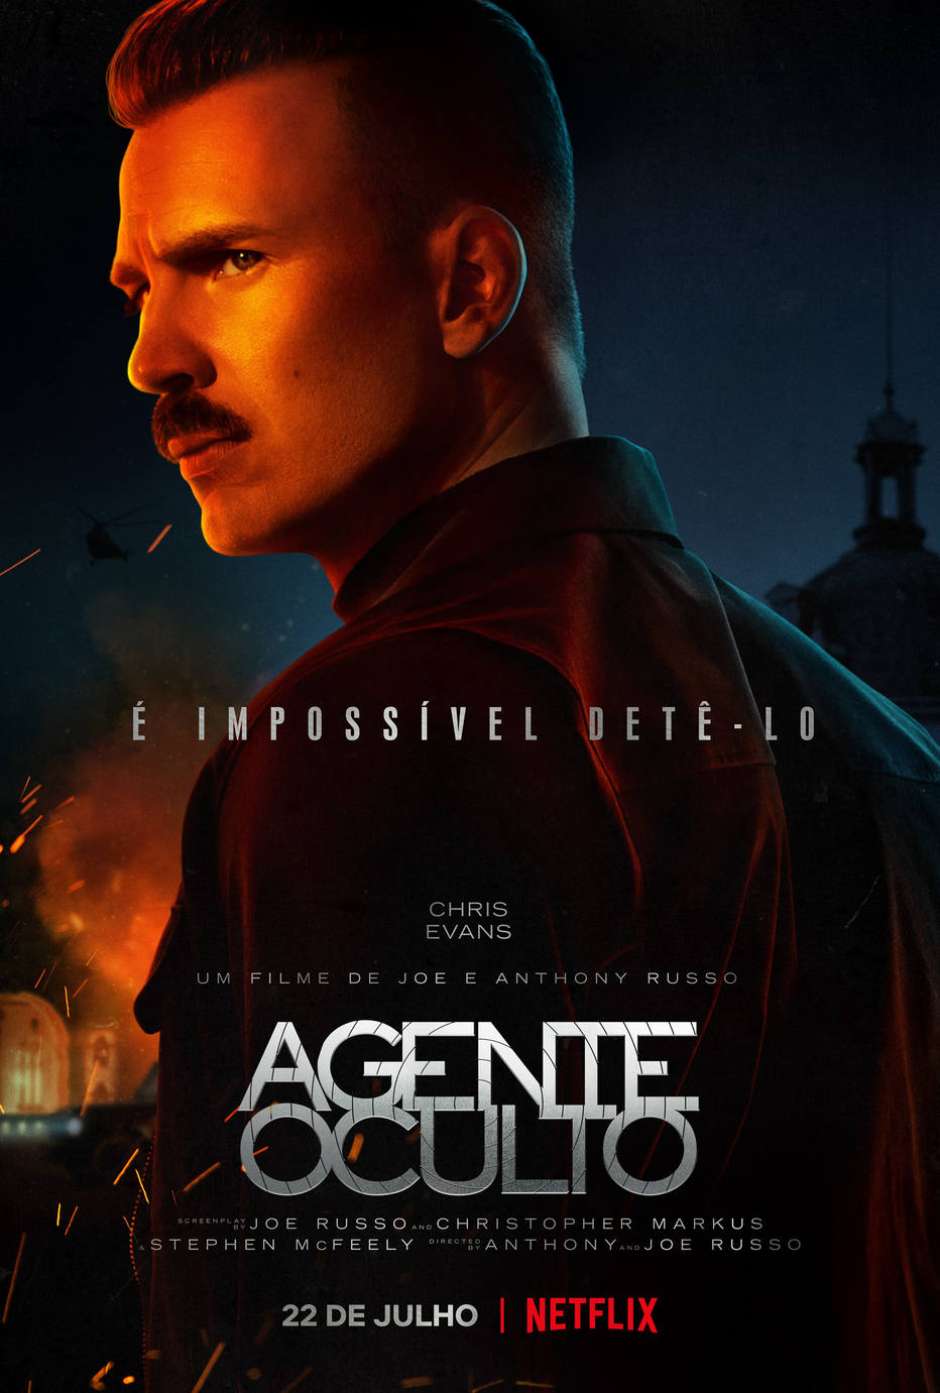 Agente Oculto': o filme mais caro da Netflix, estrelado por Wagner Moura e  Chris Evans